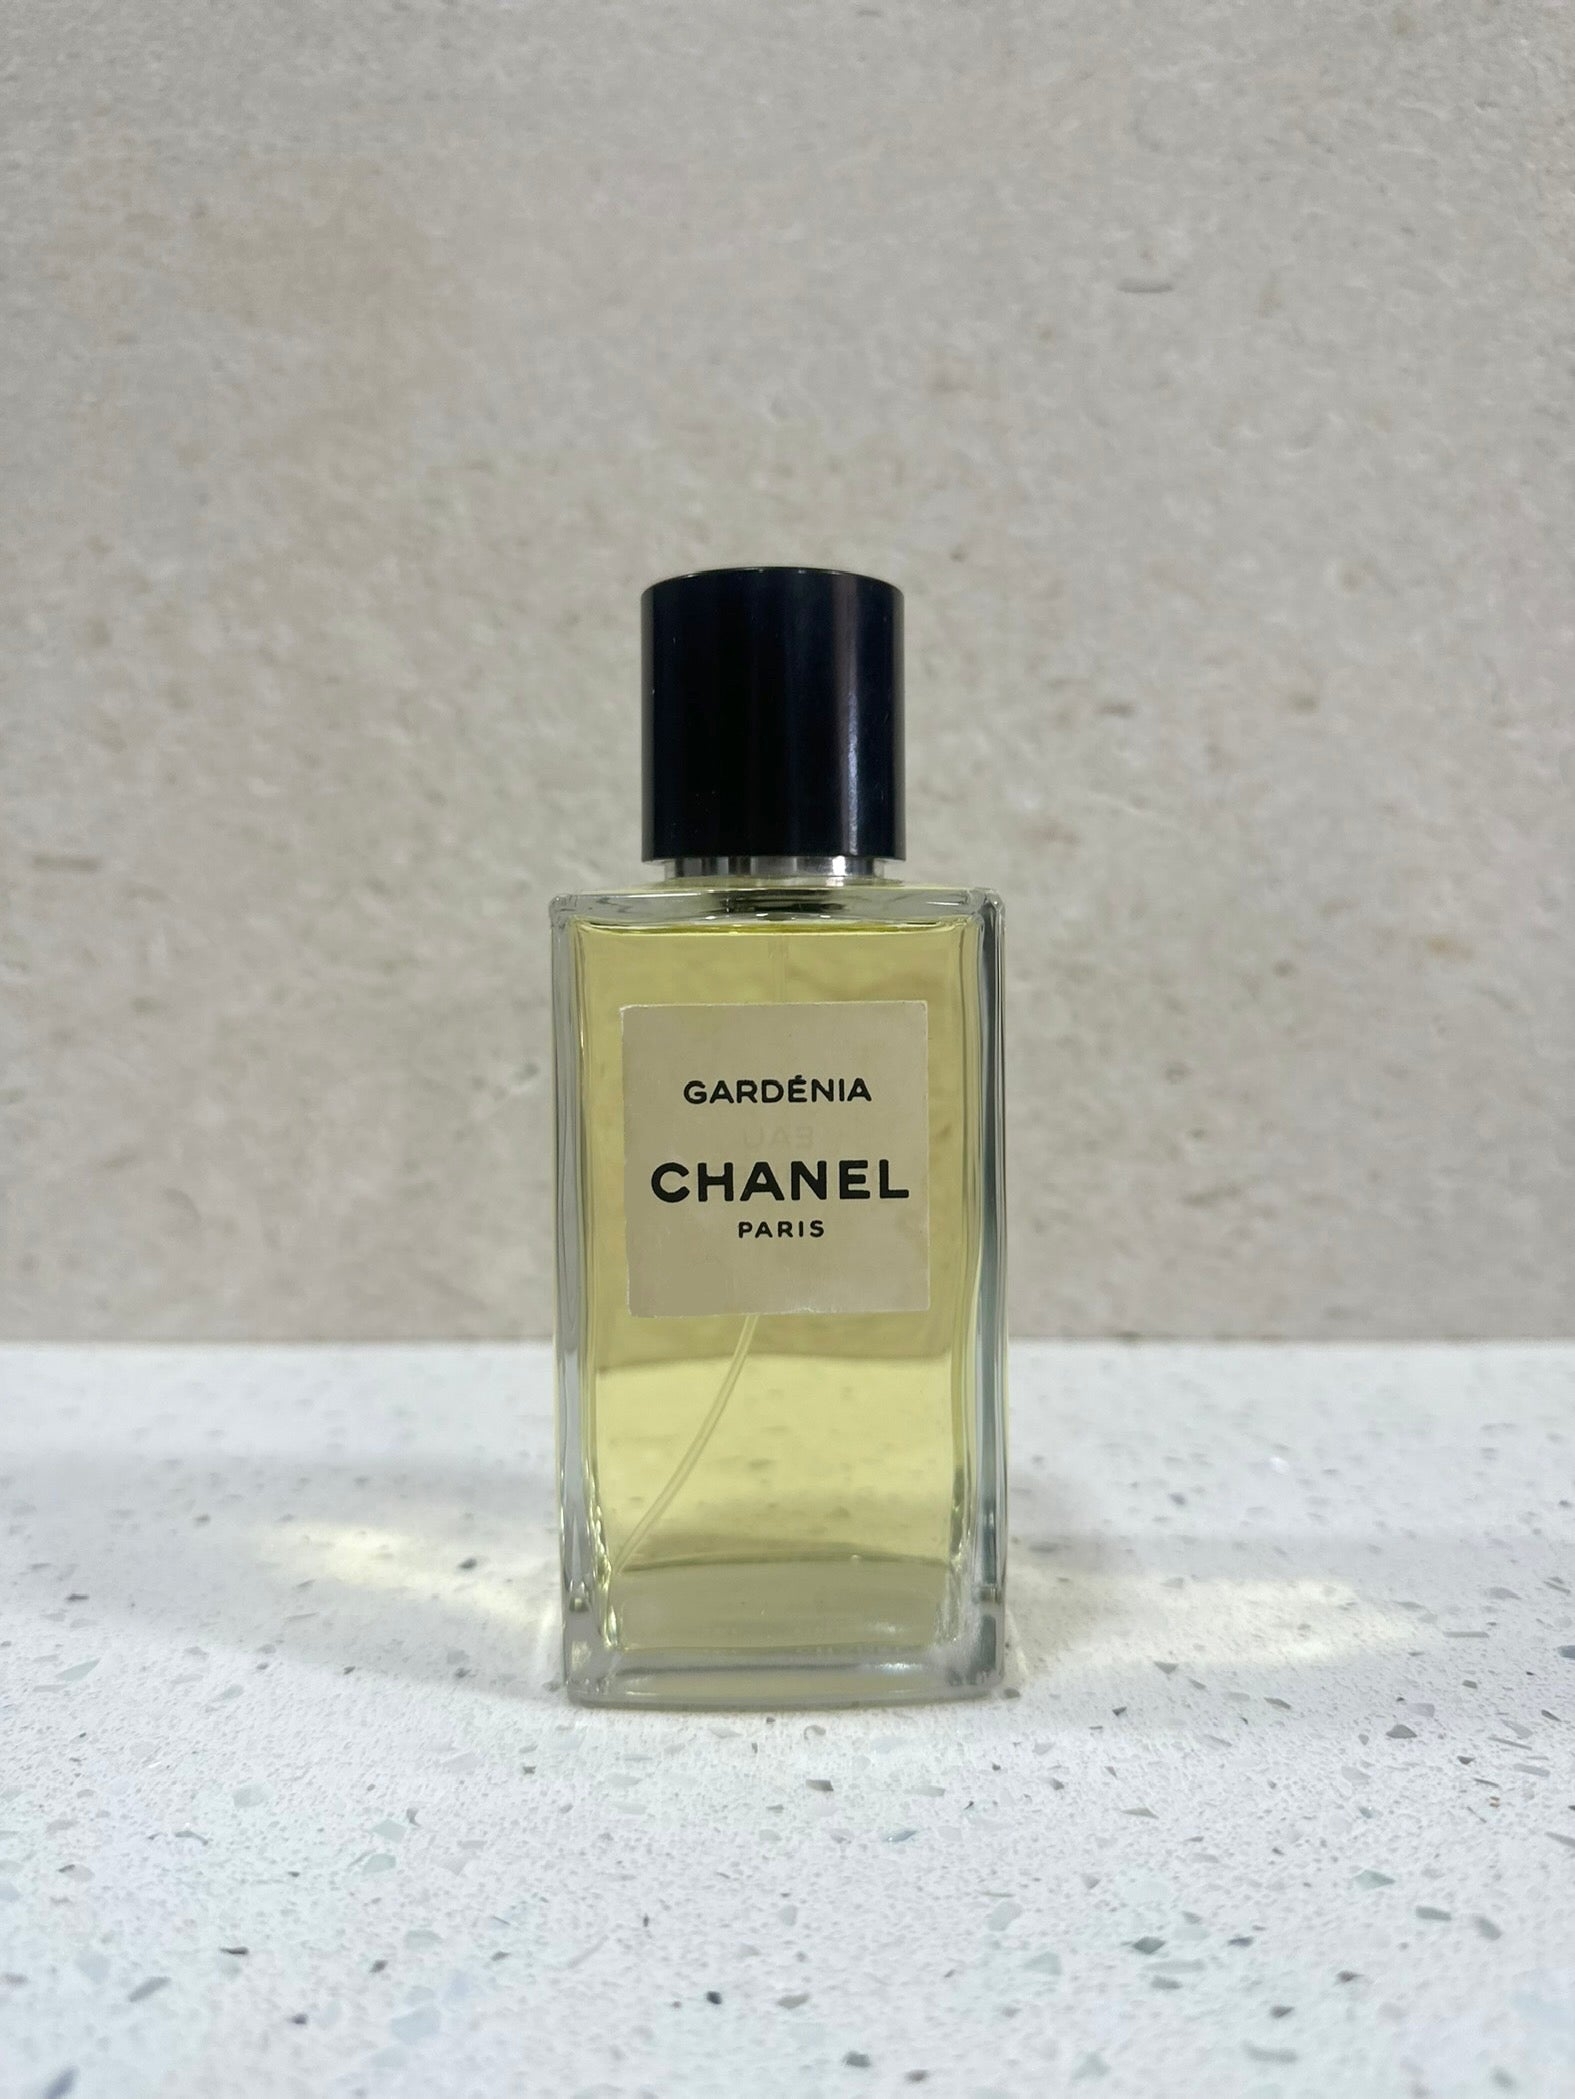 Les Exclusifs de Chanel Coromandel Parfum 0.5 oz/15 ml.